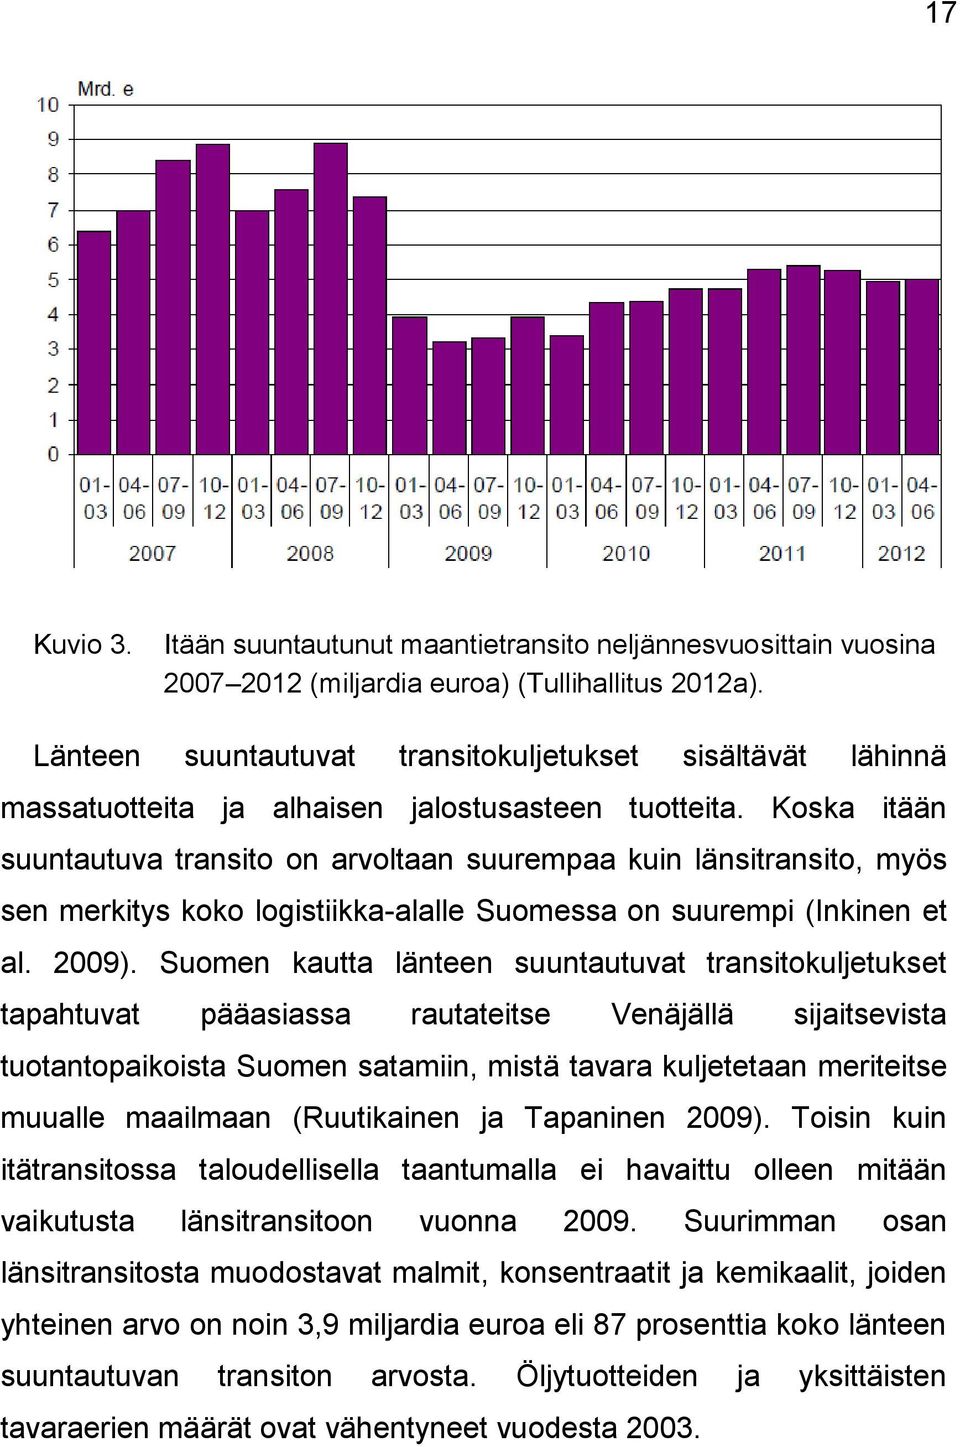 Koska itään suuntautuva transito on arvoltaan suurempaa kuin länsitransito, myös sen merkitys koko logistiikka-alalle Suomessa on suurempi (Inkinen et al. 2009).